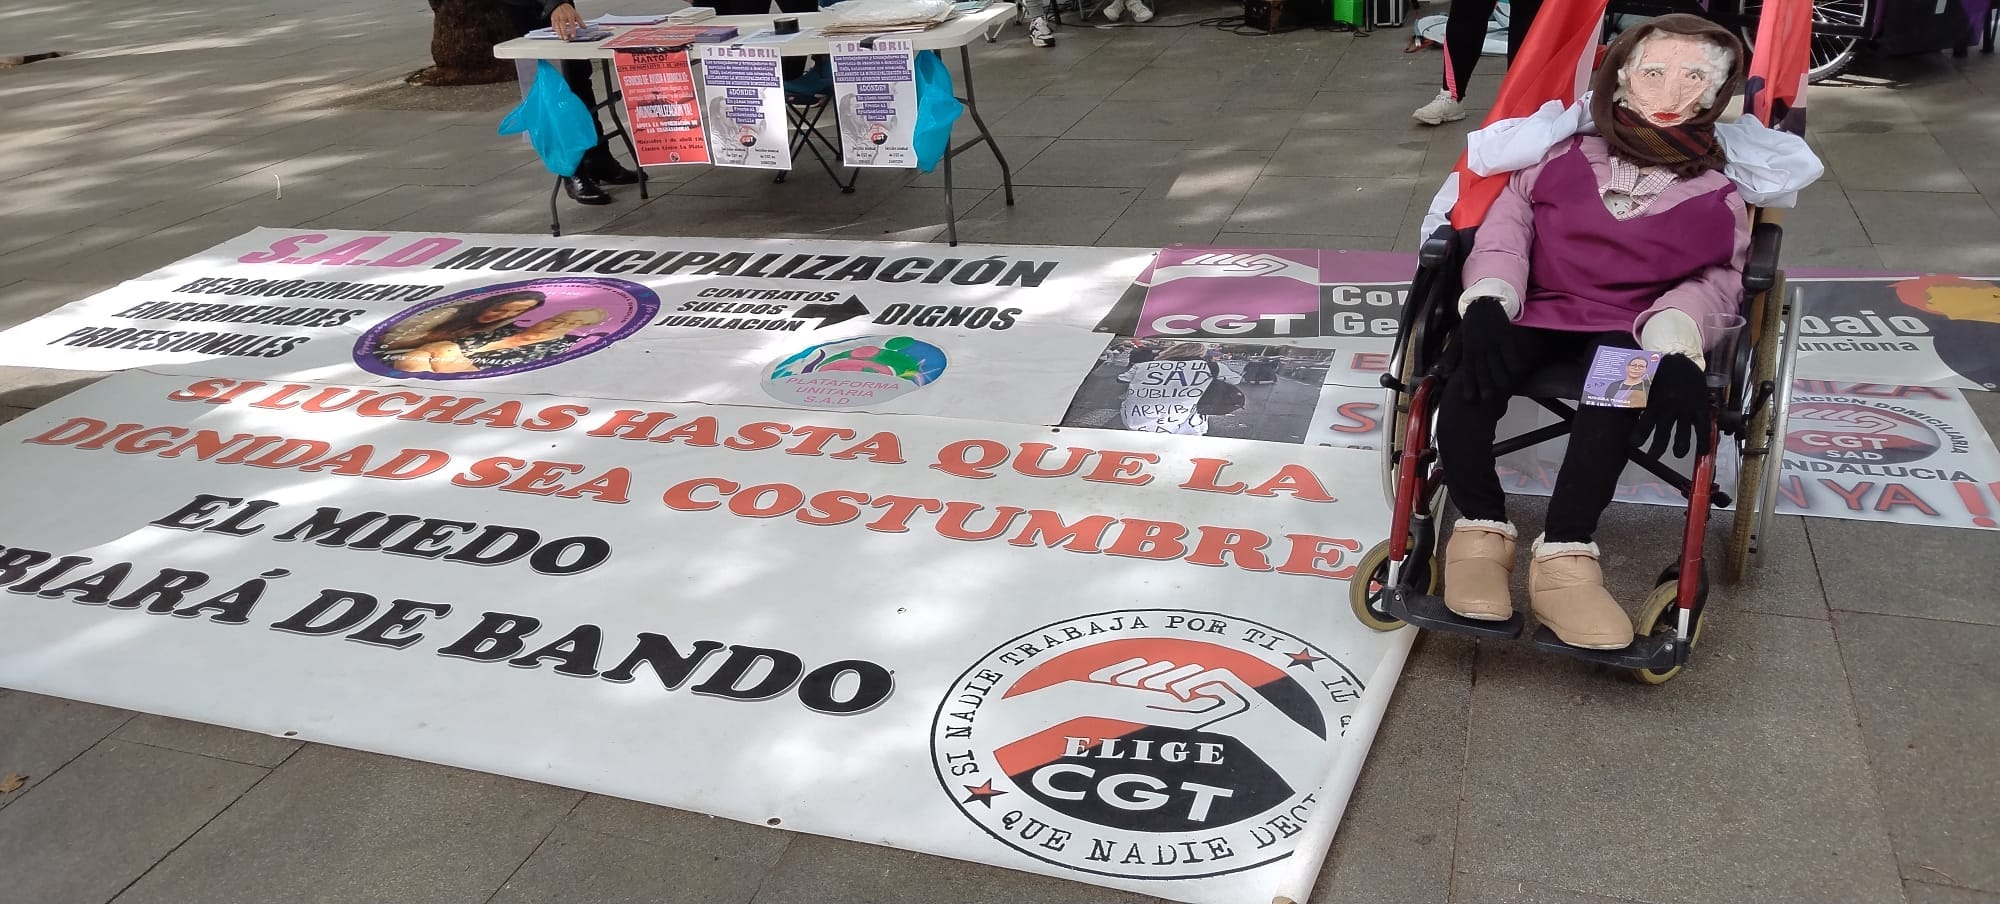 Las trabajadoras del Servicio de Atención a Domicilio en Sevilla (SAD) superan el mes de acampada permanente por la municipalización del servicio